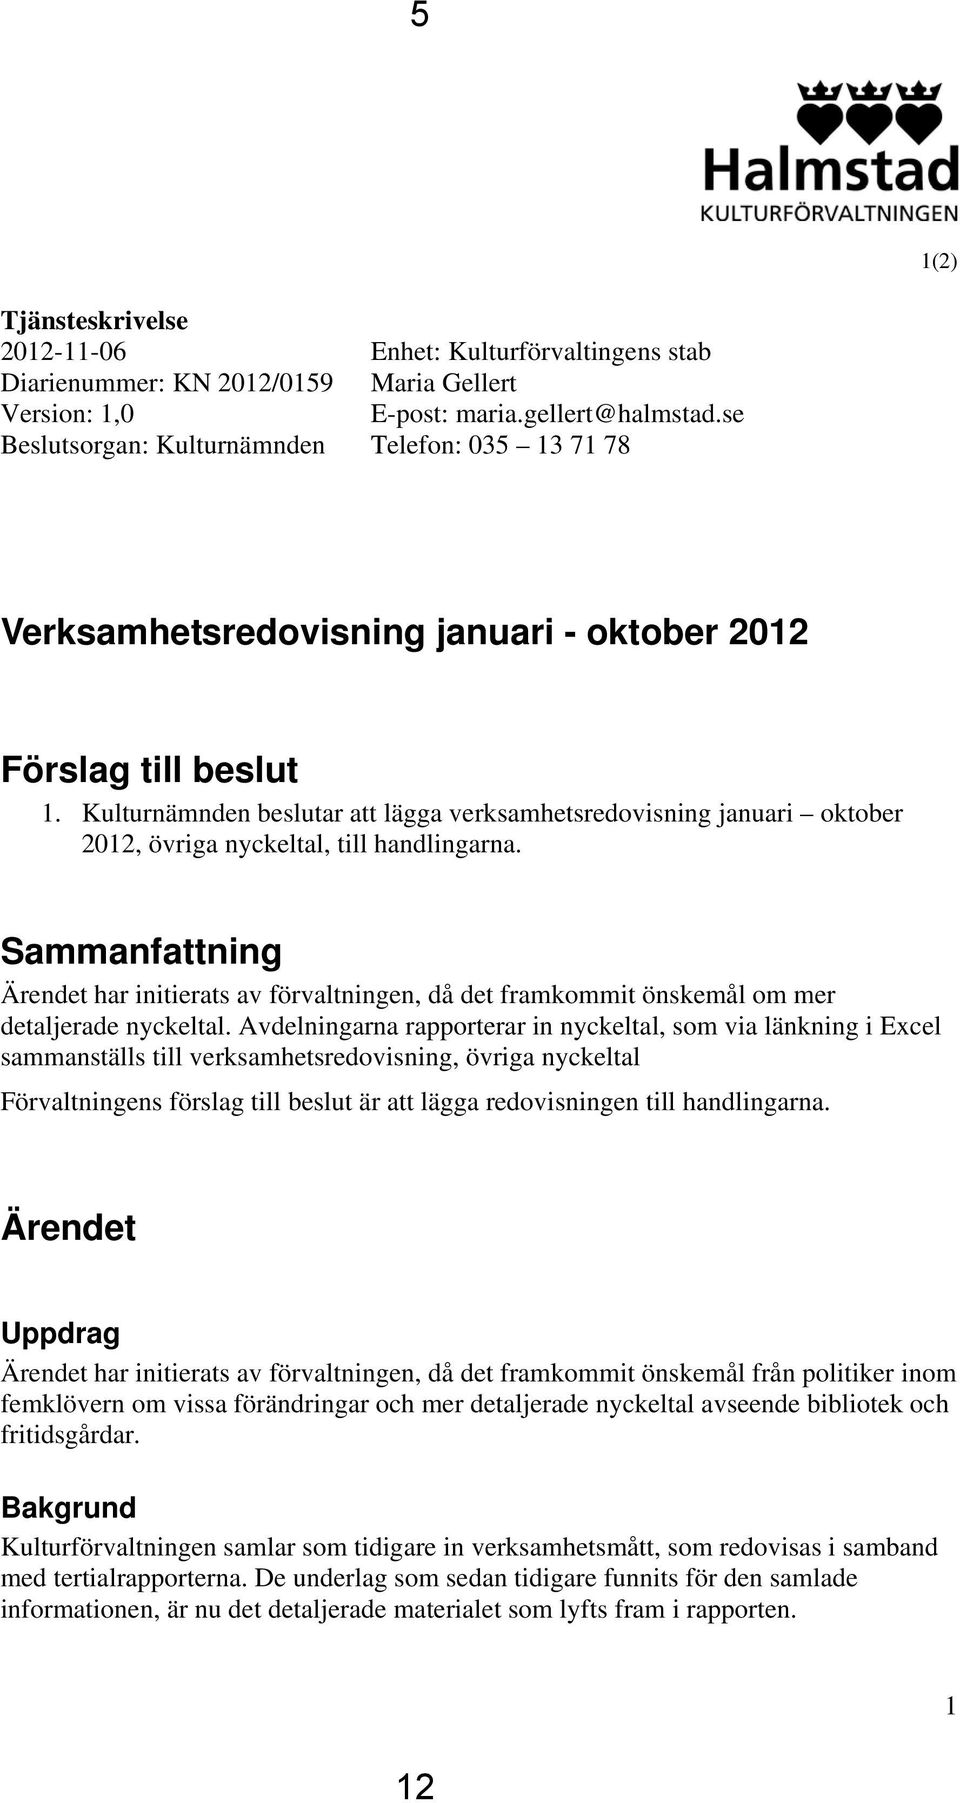 Kulturnämnden beslutar att lägga verksamhetsredovisning januari oktober 2012, övriga nyckeltal, till handlingarna.